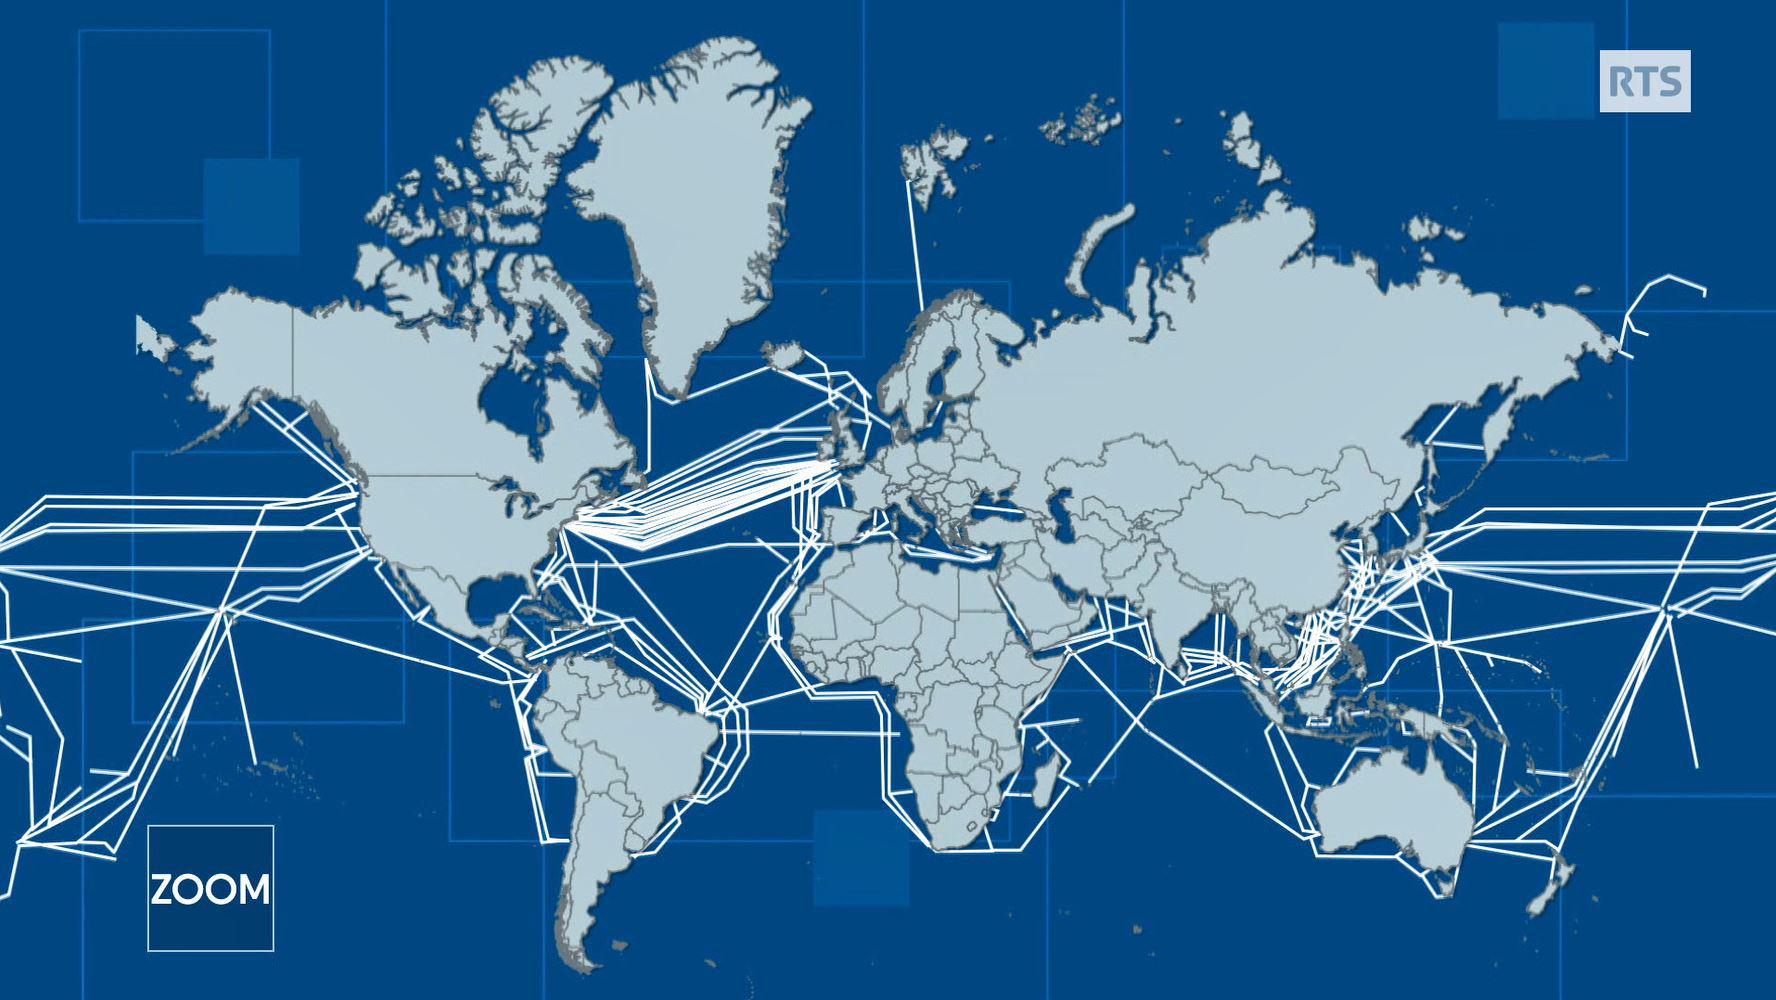 La carte des câbles sous-marins d'internet. [RTS/DR]